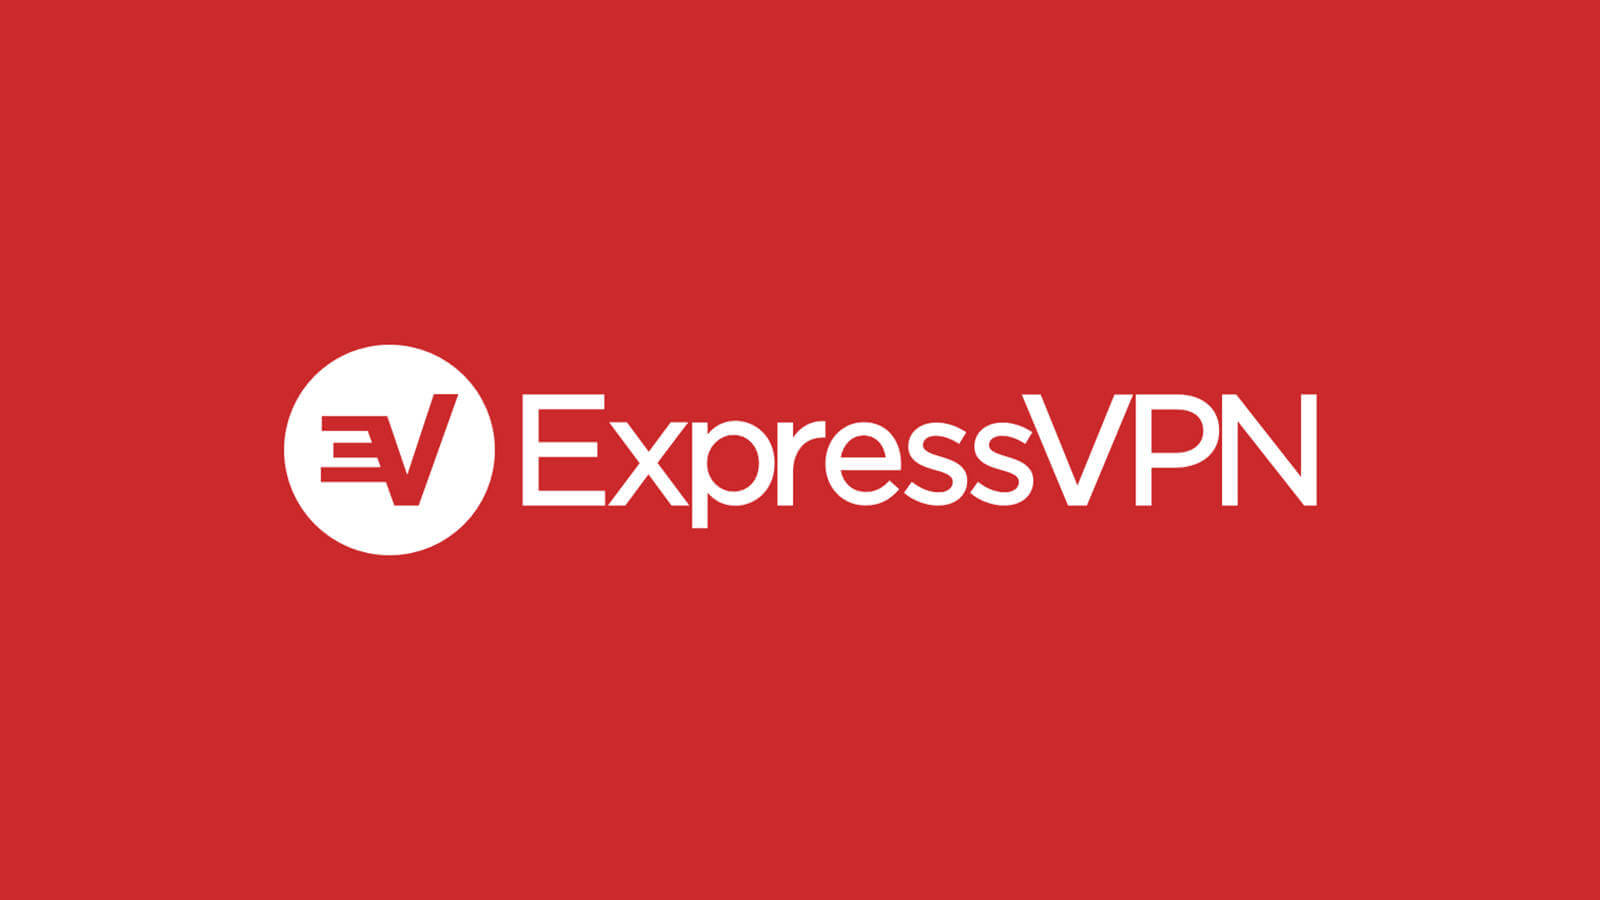 Express-VPN-7.9.3-Crack-Serial-Key-2020-Latest-Download